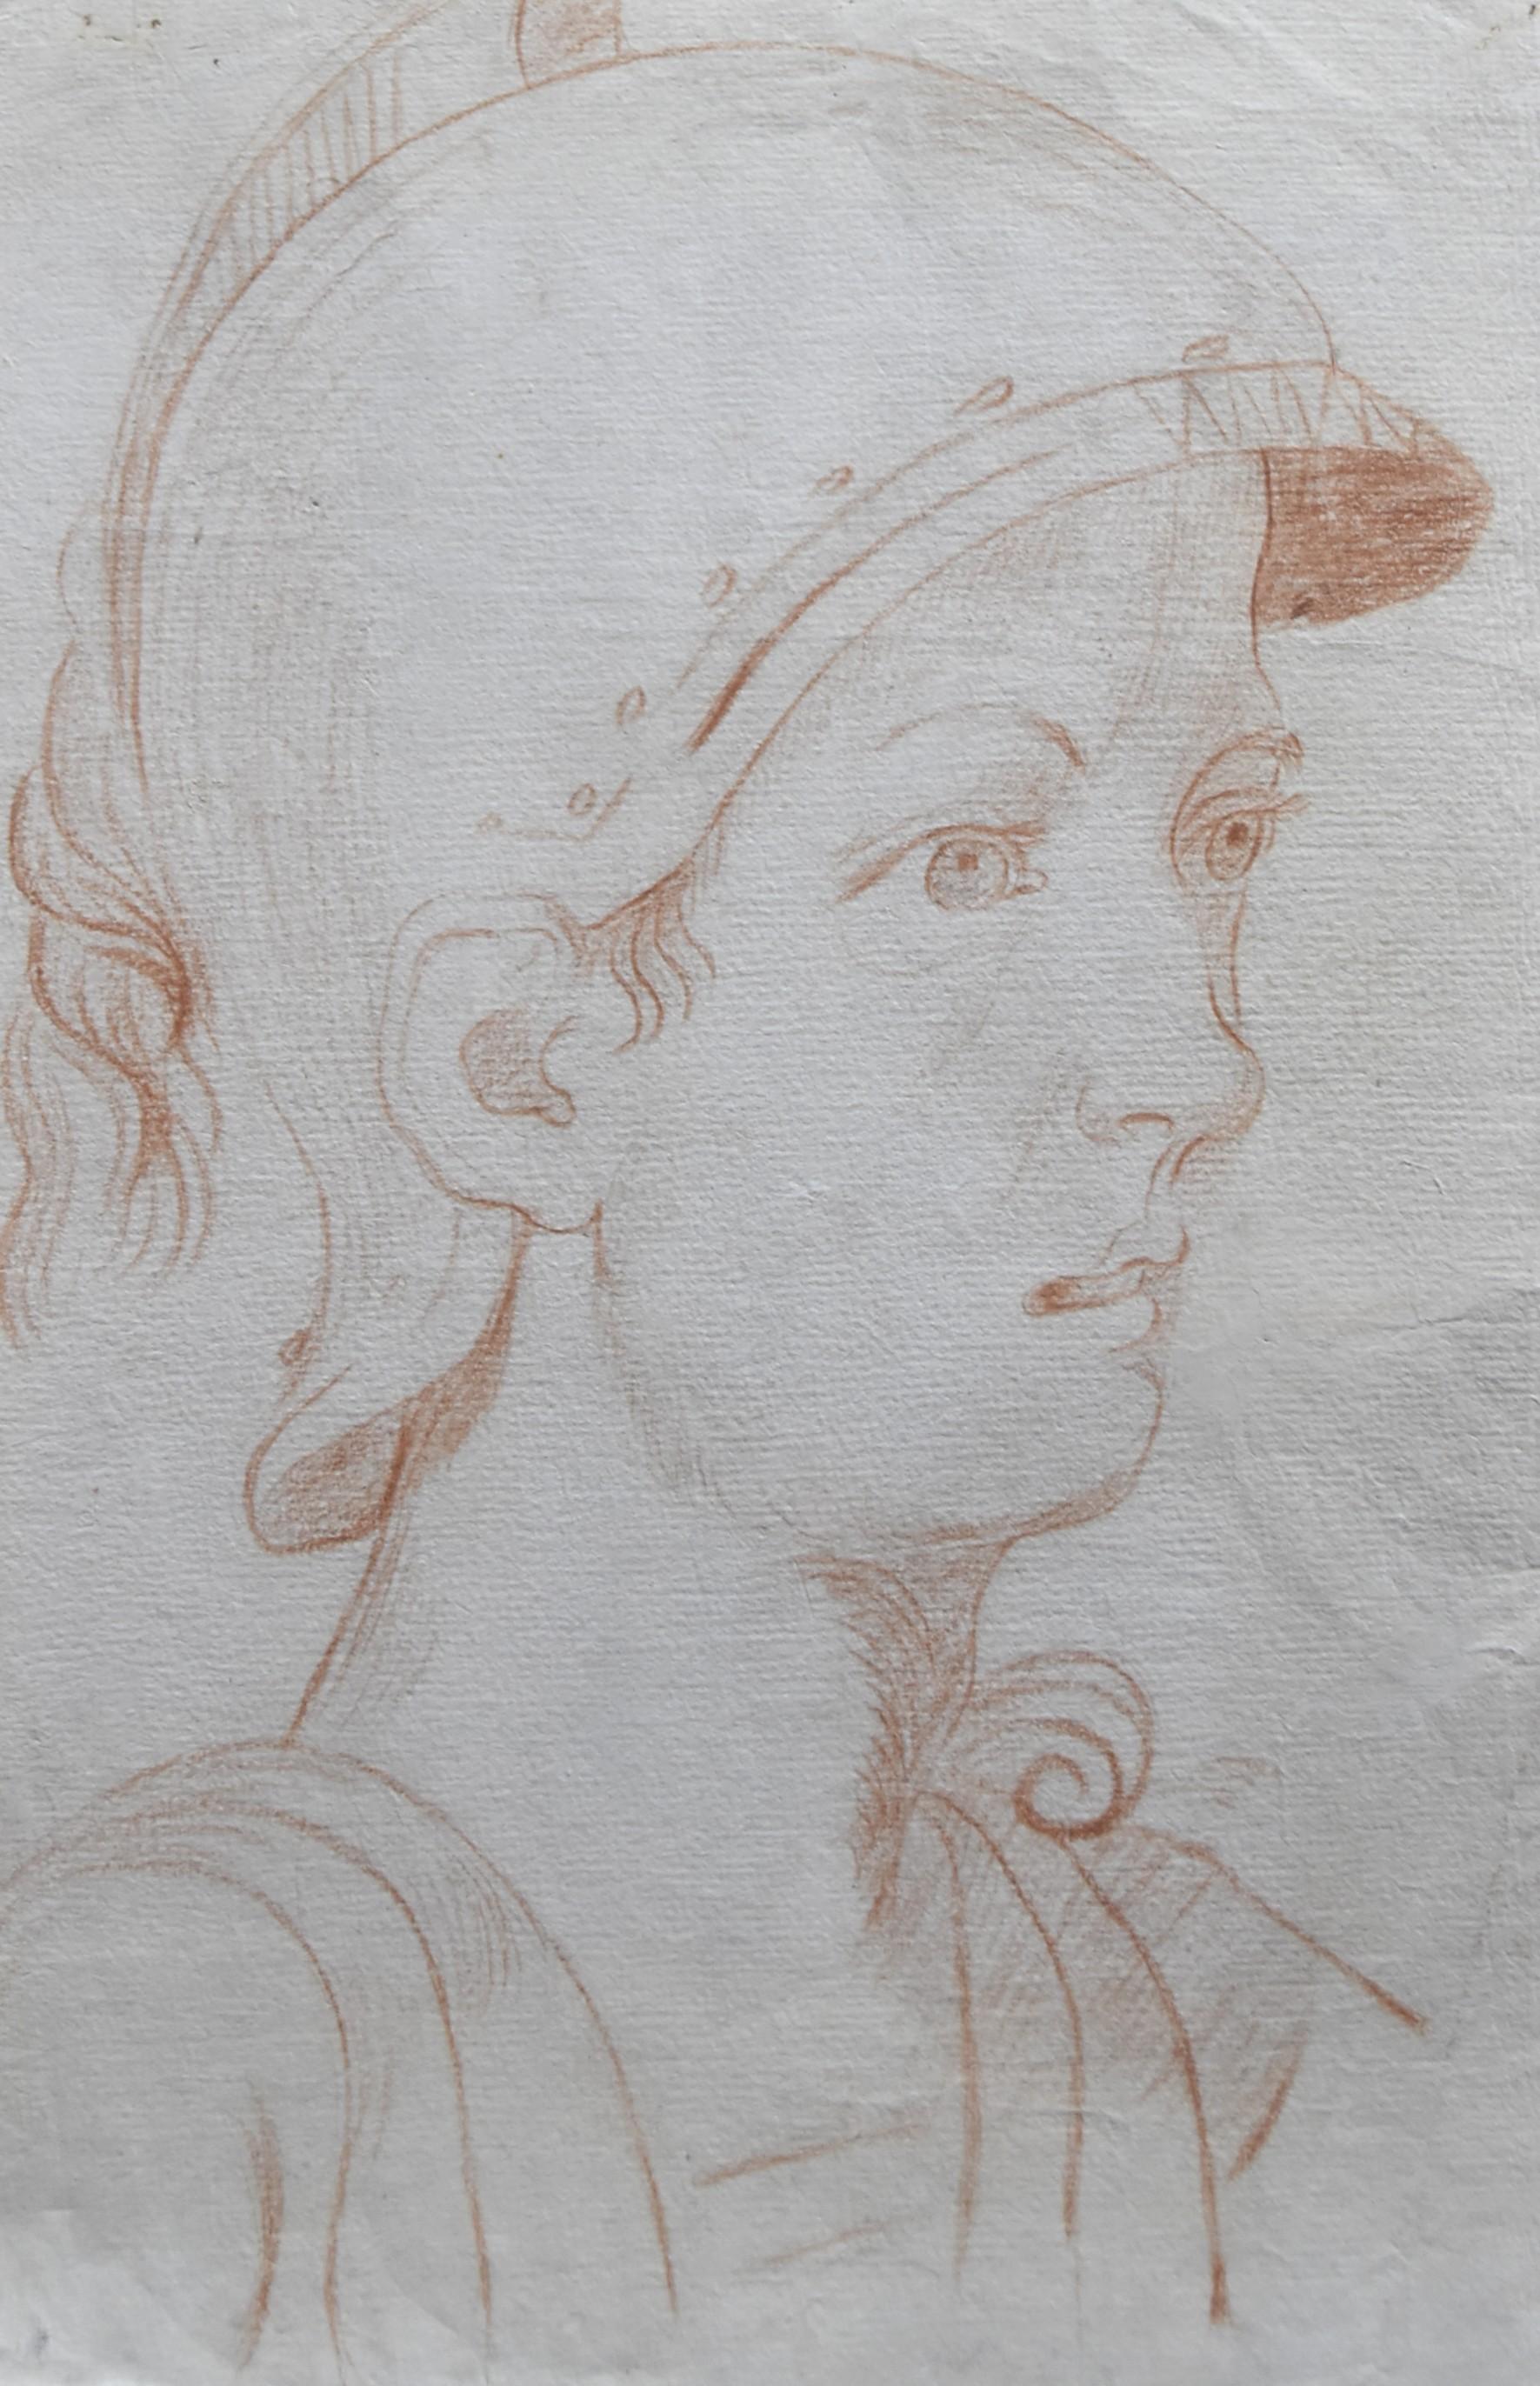 Italienische Schule des 18. Jahrhunderts,  Ein antiker Soldat im Profil, rote Kreide auf Papier